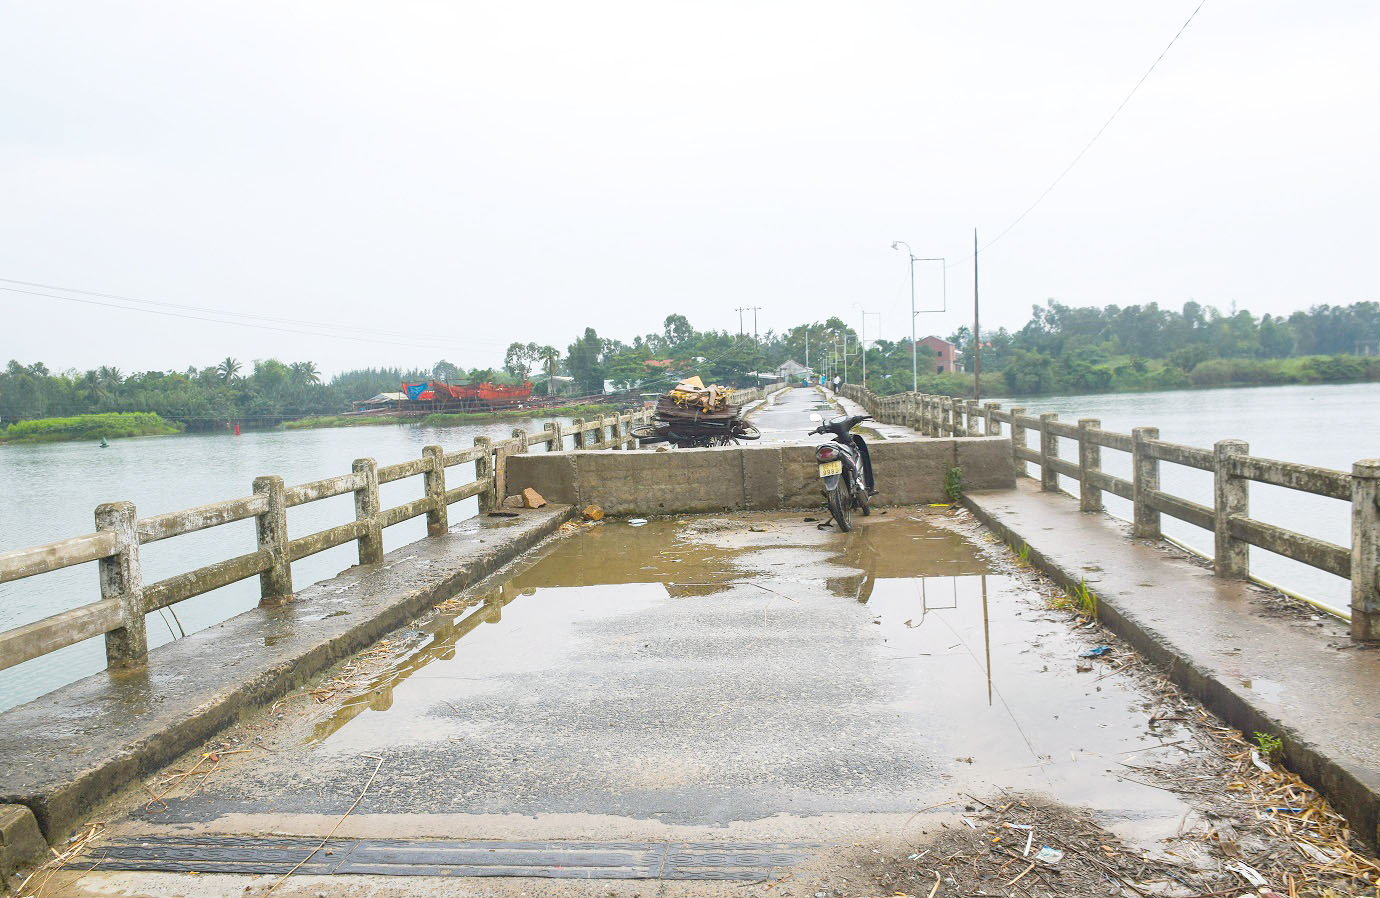 Để tránh người dân đi lại trên cầu, UBND xã Duy Vinh đã đỗ bê tông cao hơn 0.5m và đặt biển cấm qua cầu. Tuy nhiên do quản đường đi lại qua cầu tạm xa nên nhiều người di chuyển bằng xe đạp vẫn bấp chấp qua cầu. Ảnh: THANH THẮNG